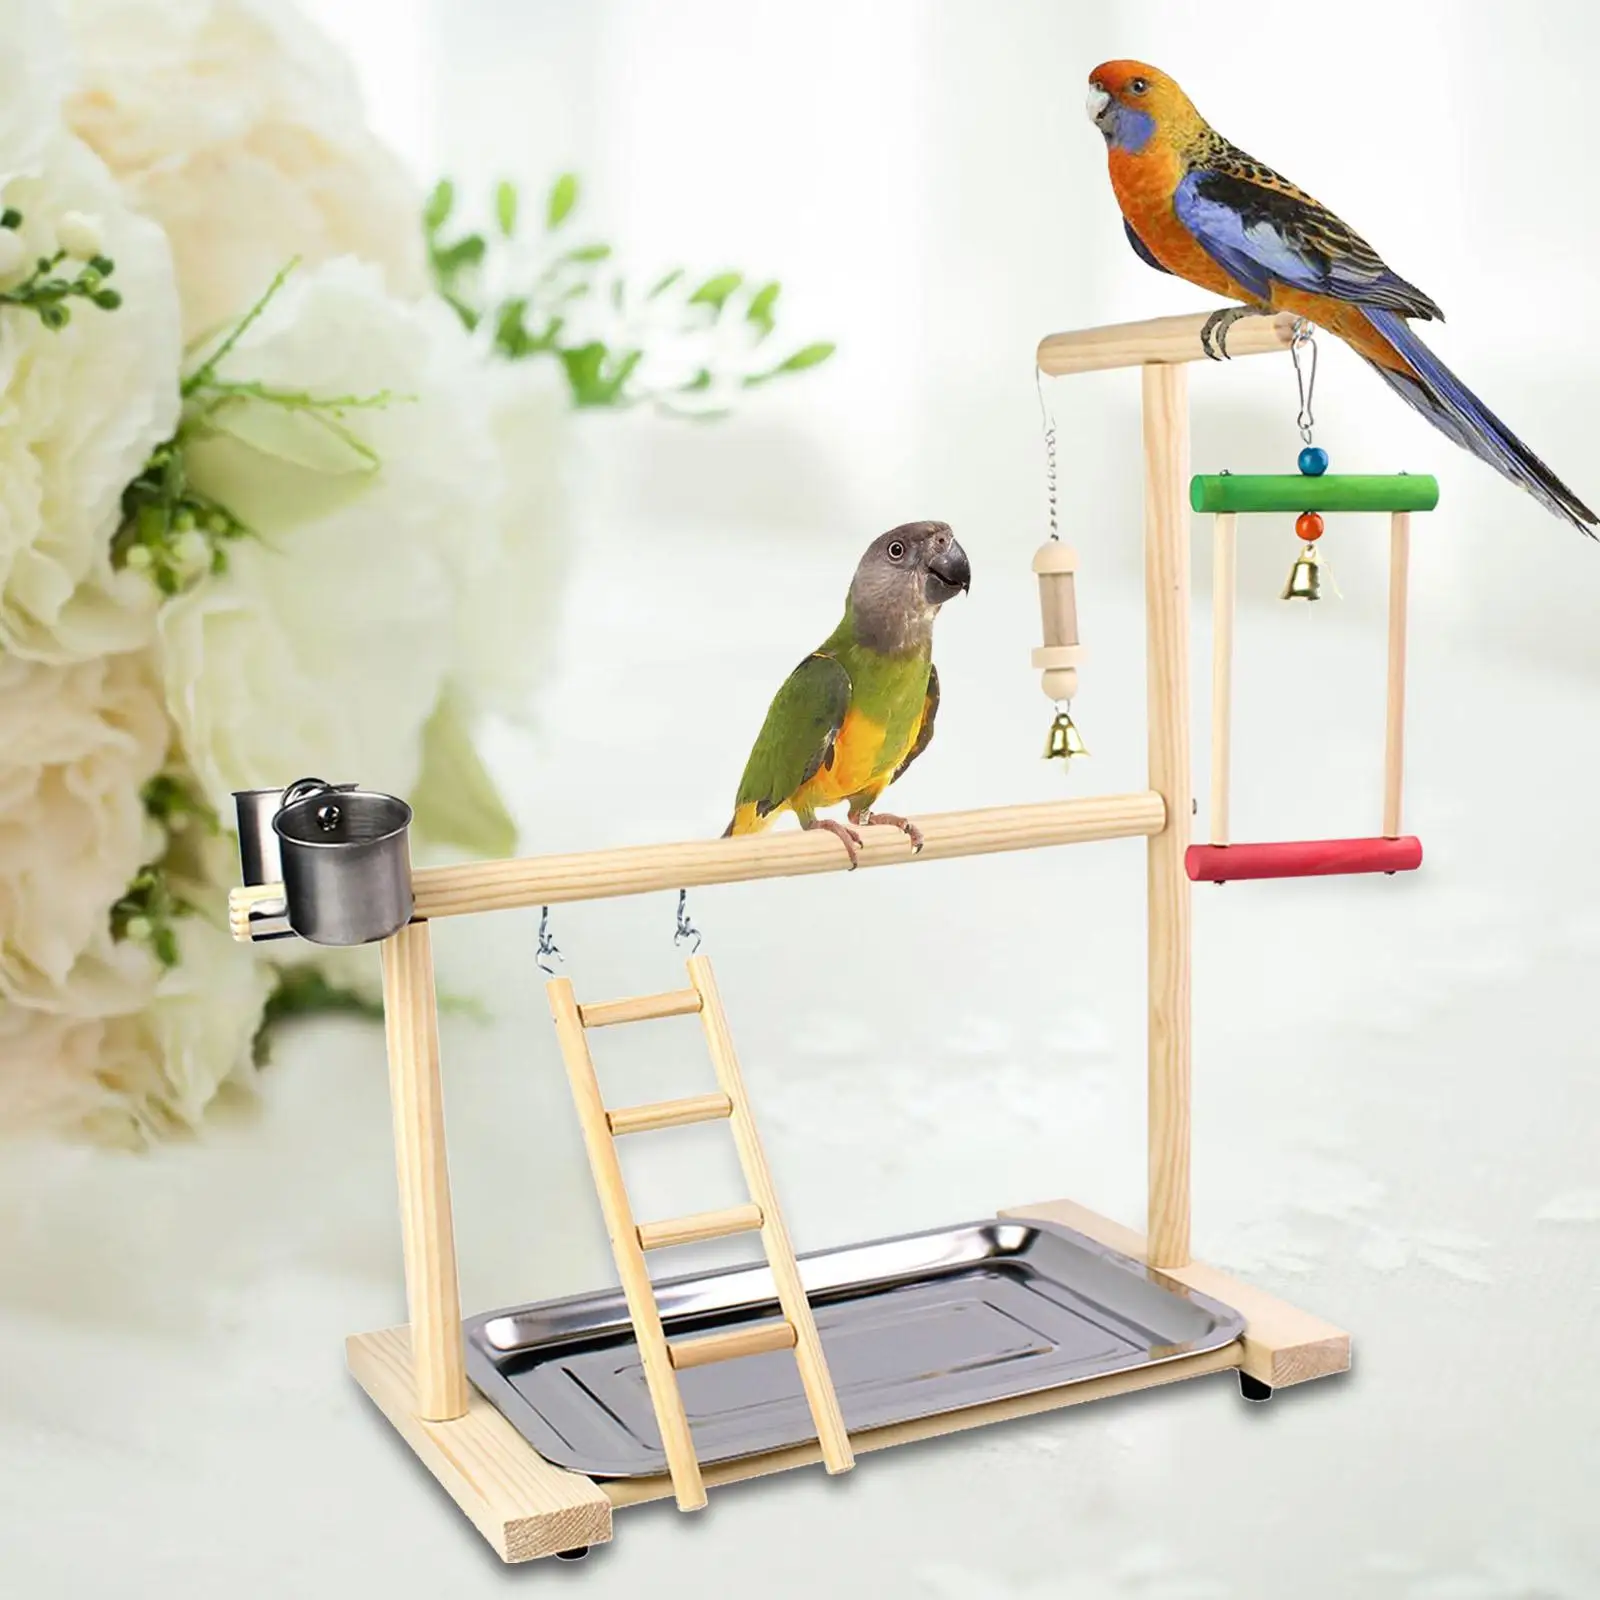 Ladder Bird Platform Perch Bird Playground Pet Parrot Playstand for Parakeet